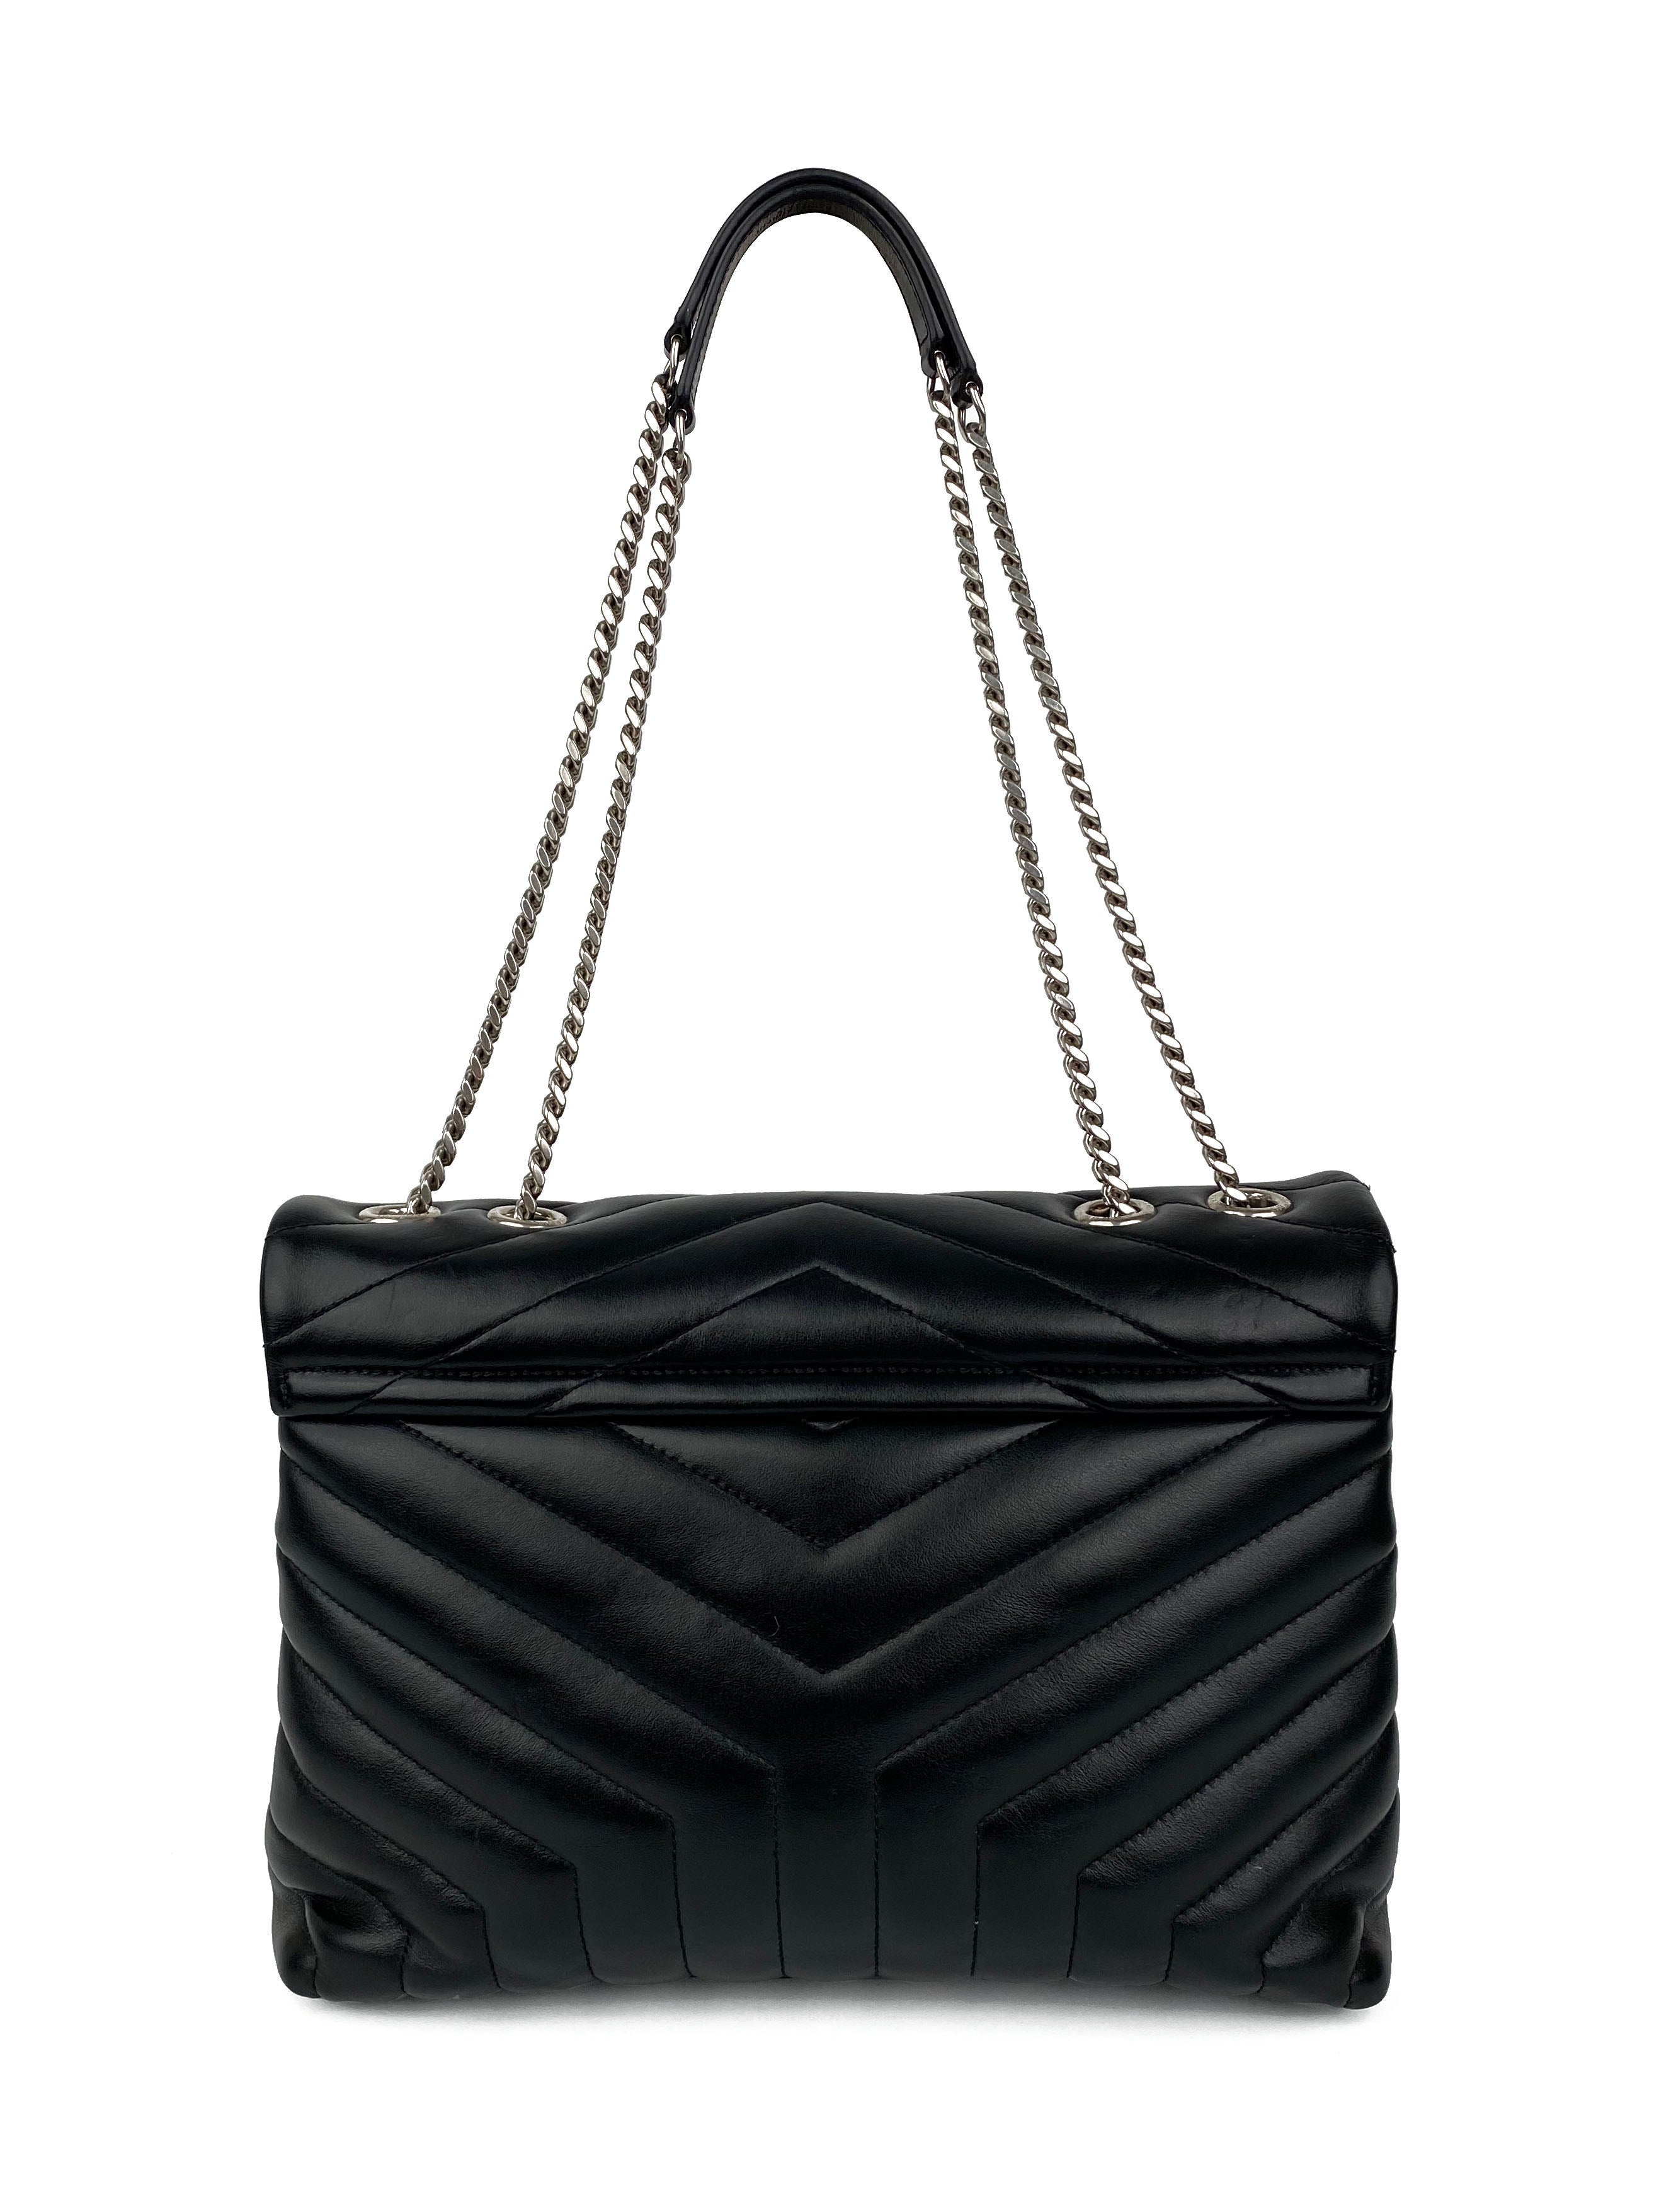 Saint Laurent Medium Black LouLou Bag